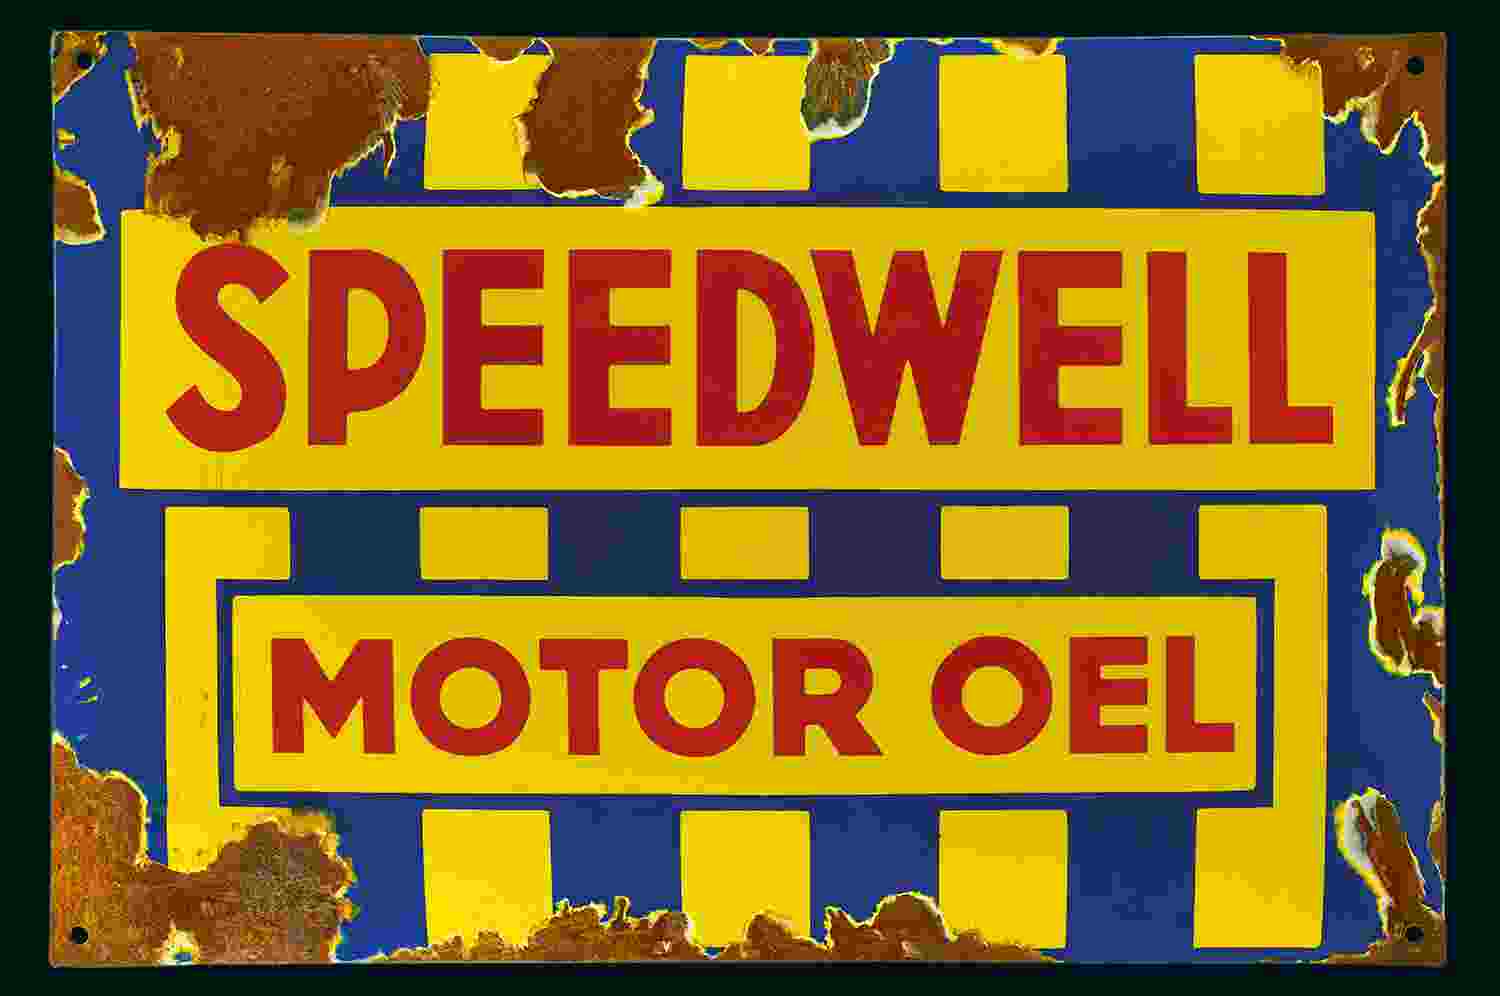 Speedwell Motor Oel  